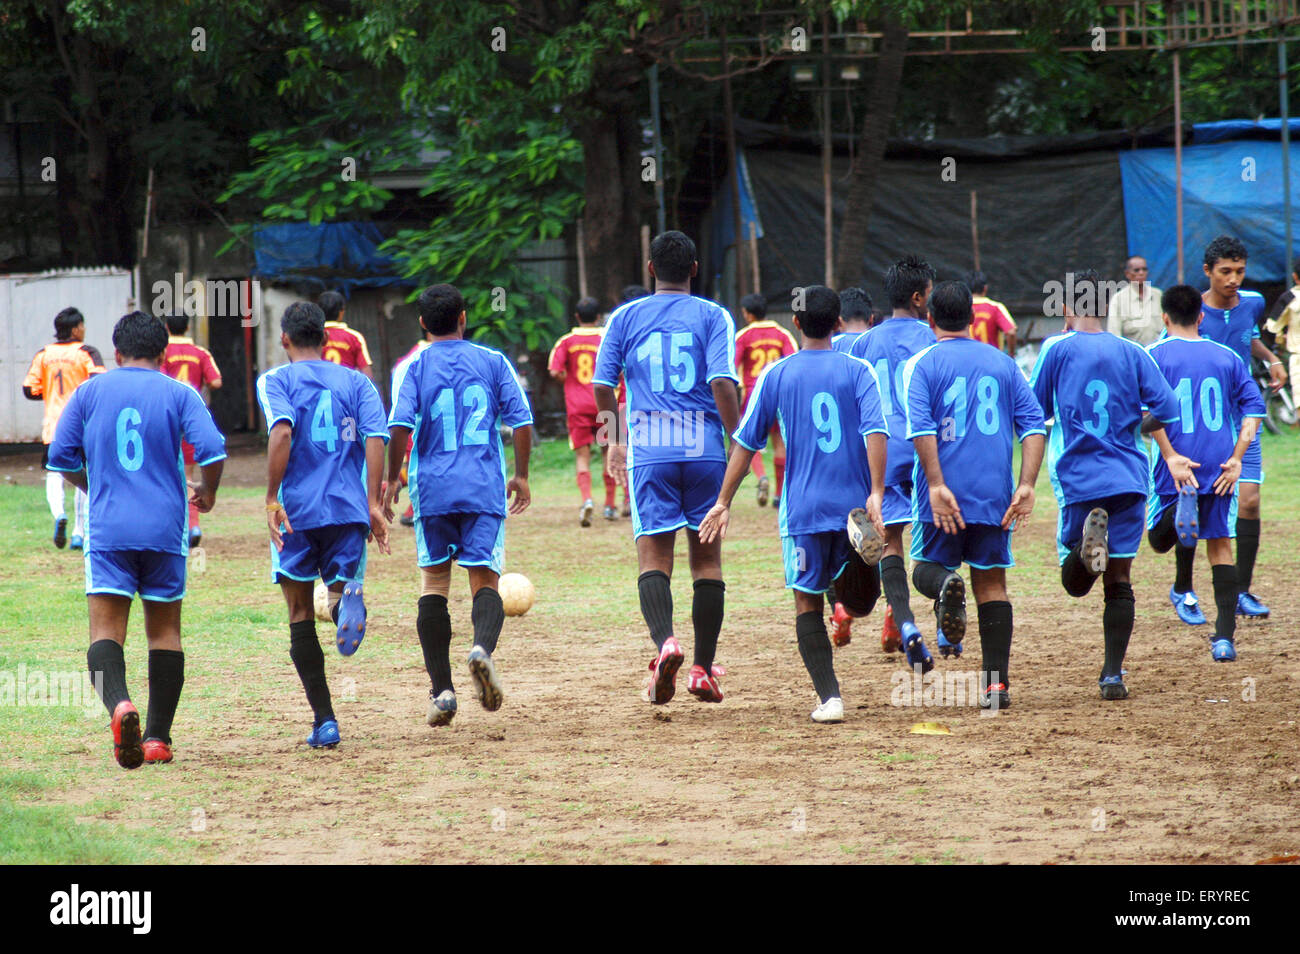 Les joueurs se réchauffent avant le match de football au stade de Cooperage, Bombay, Mumbai, Maharashtra, Inde, Asie Banque D'Images